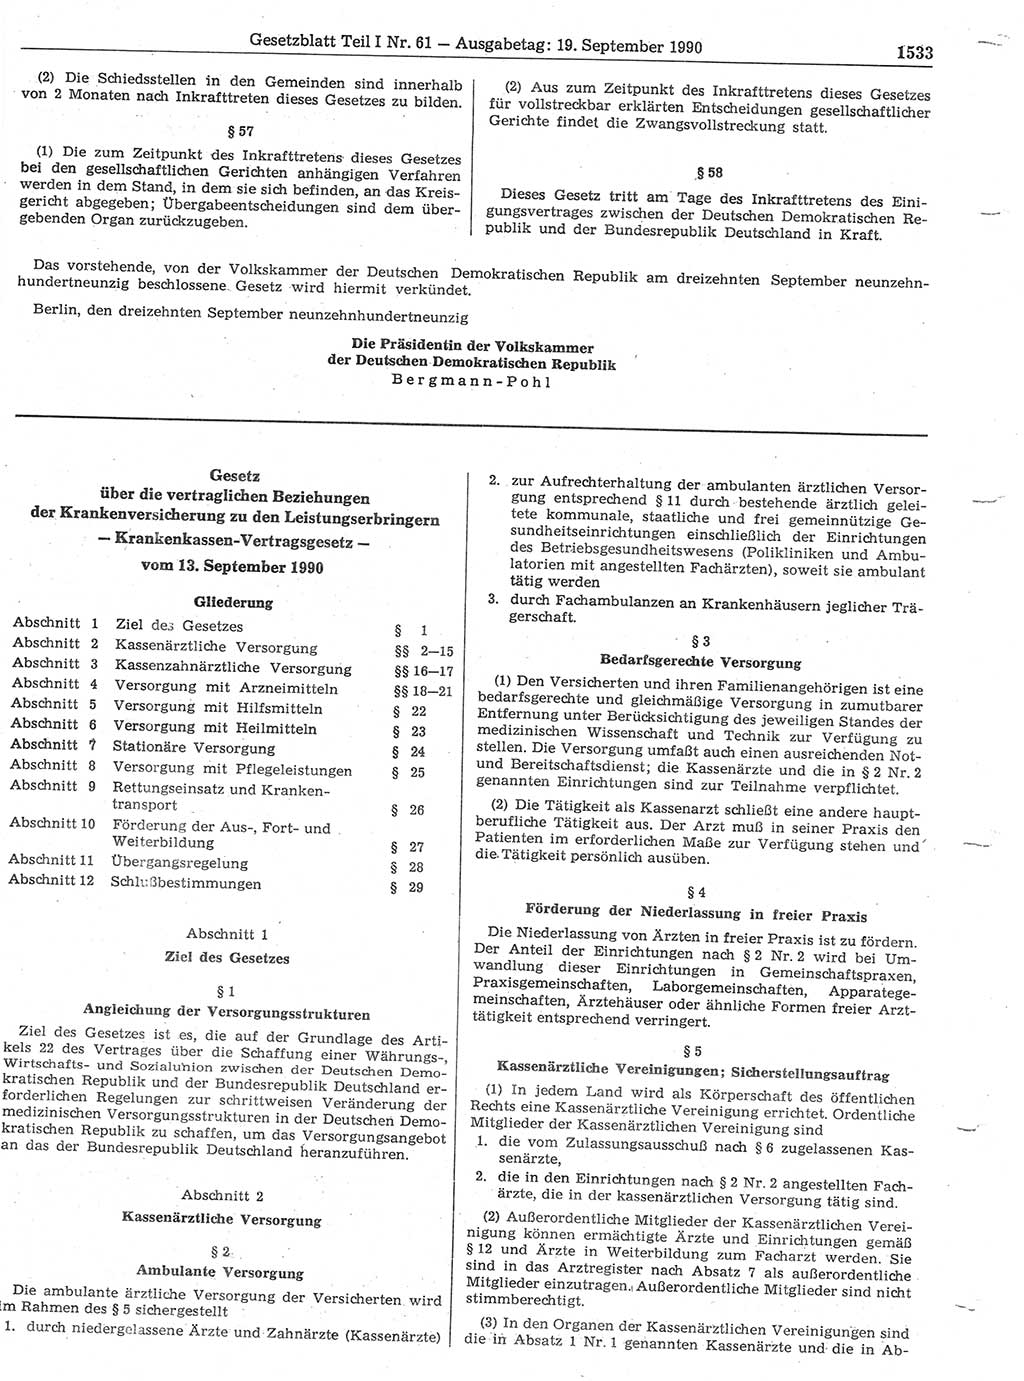 Gesetzblatt (GBl.) der Deutschen Demokratischen Republik (DDR) Teil Ⅰ 1990, Seite 1533 (GBl. DDR Ⅰ 1990, S. 1533)